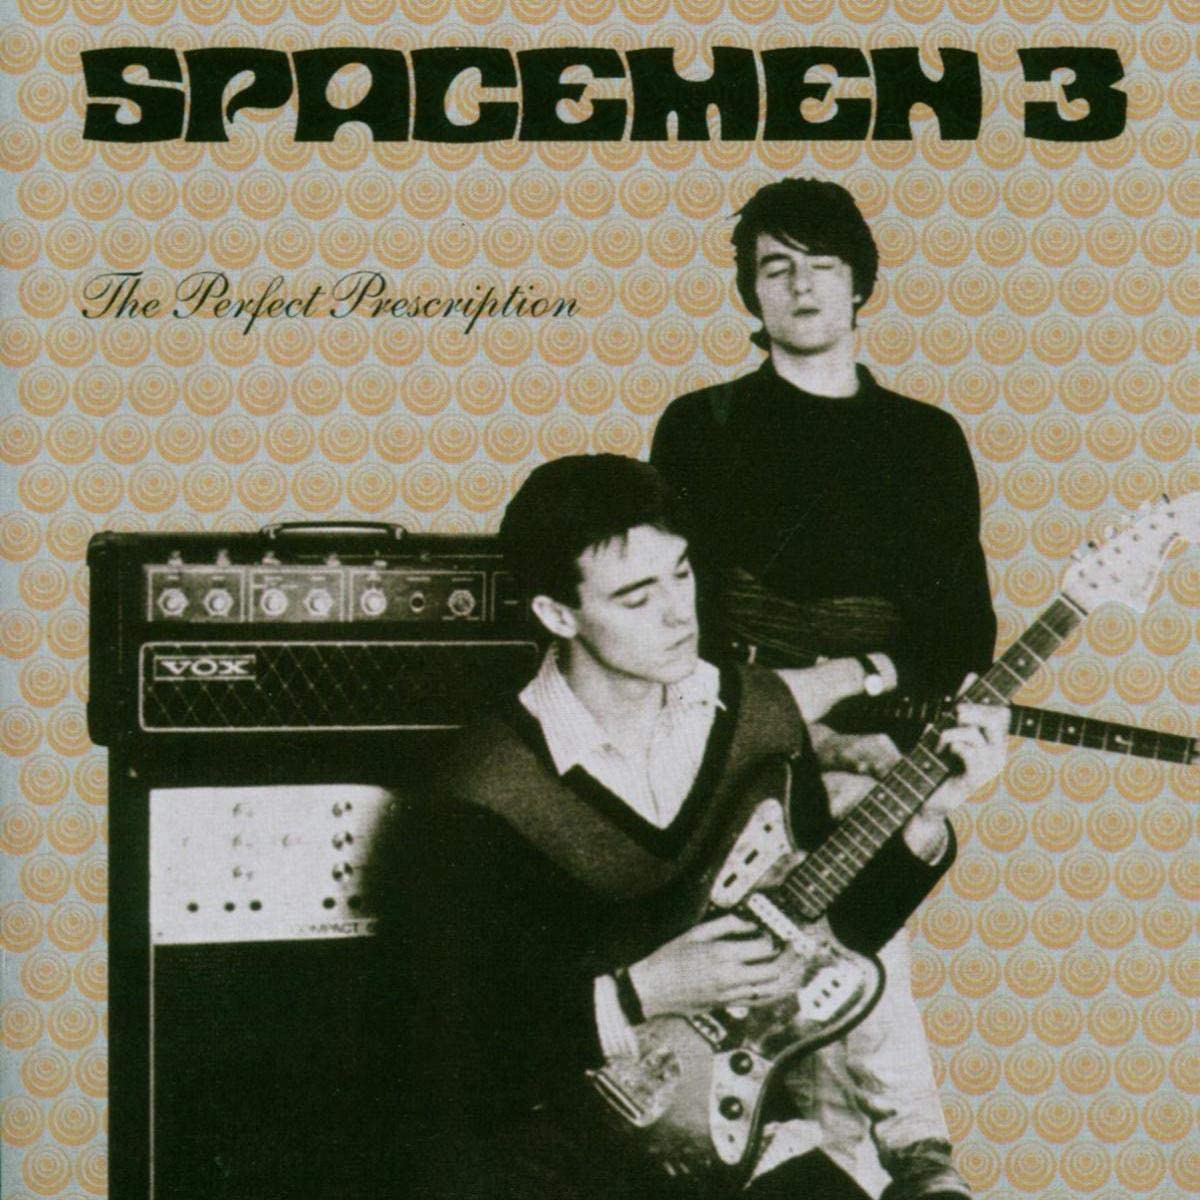 Vinyl repress of this 1987 album from the Spacememen 3